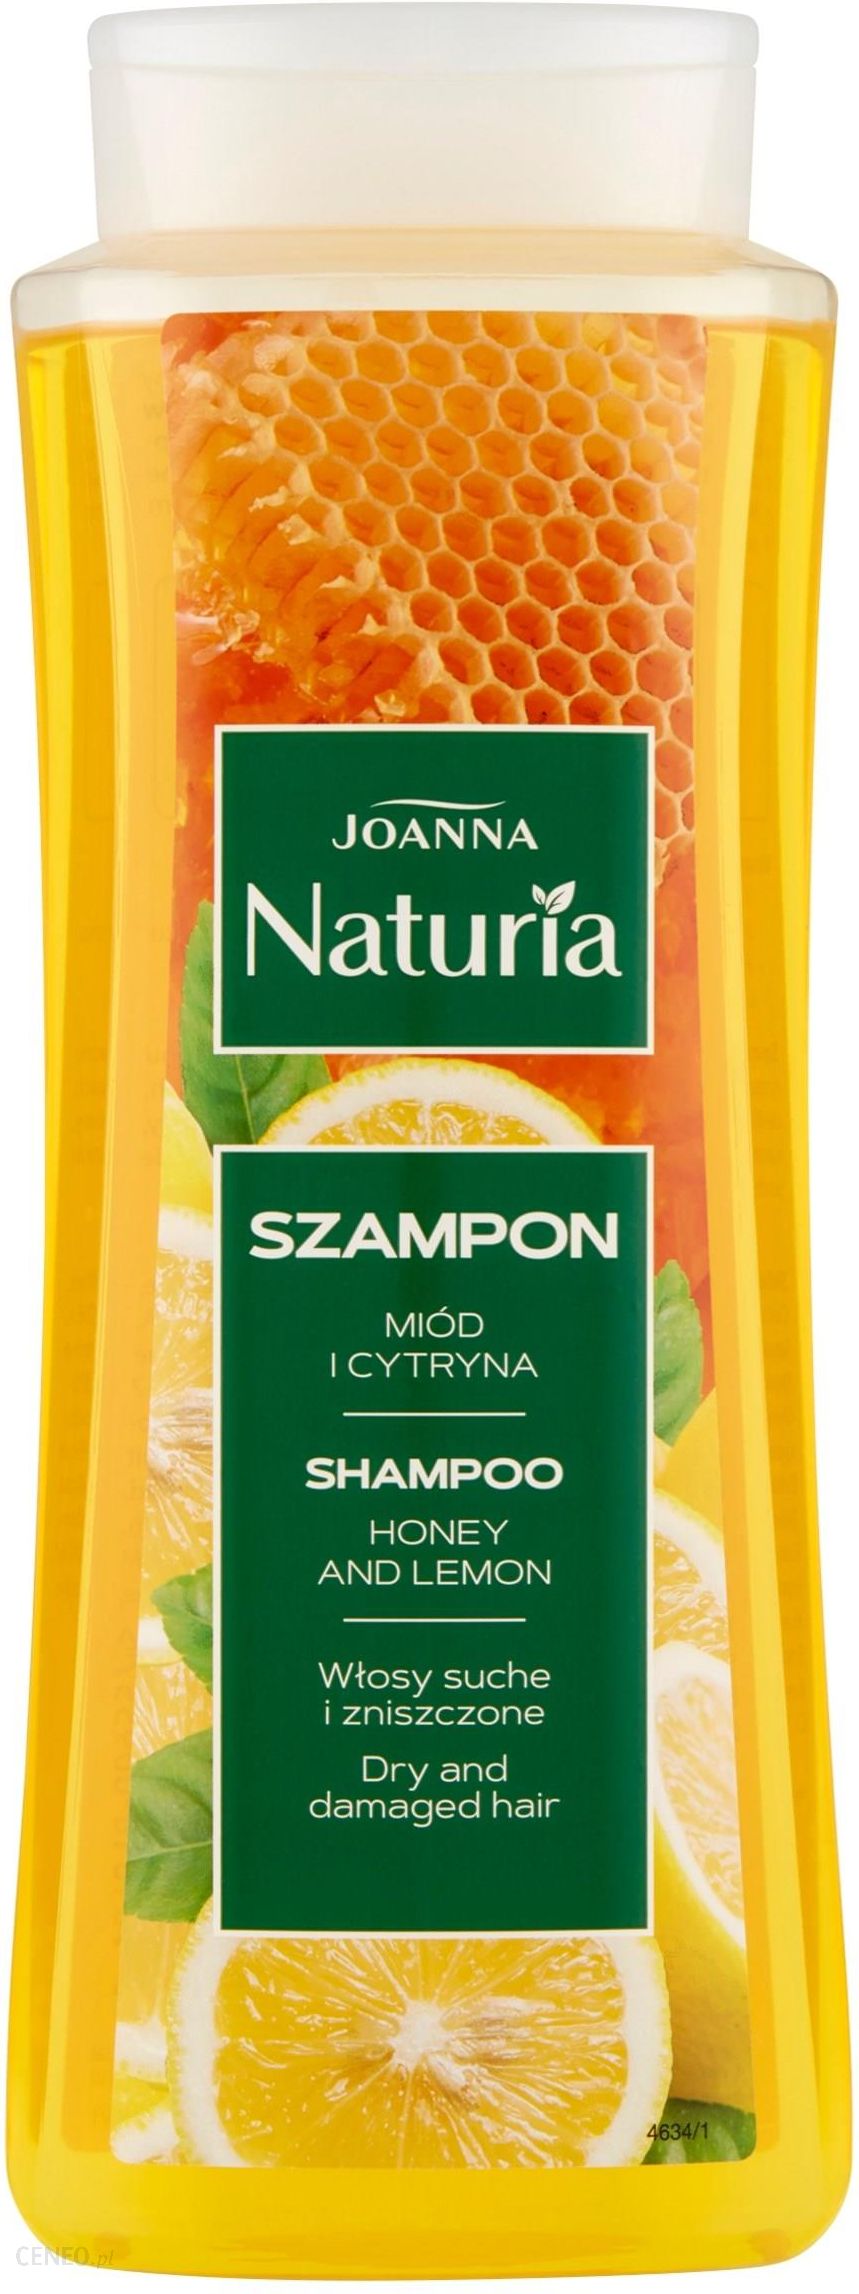 joanna szampon miód i cytryna